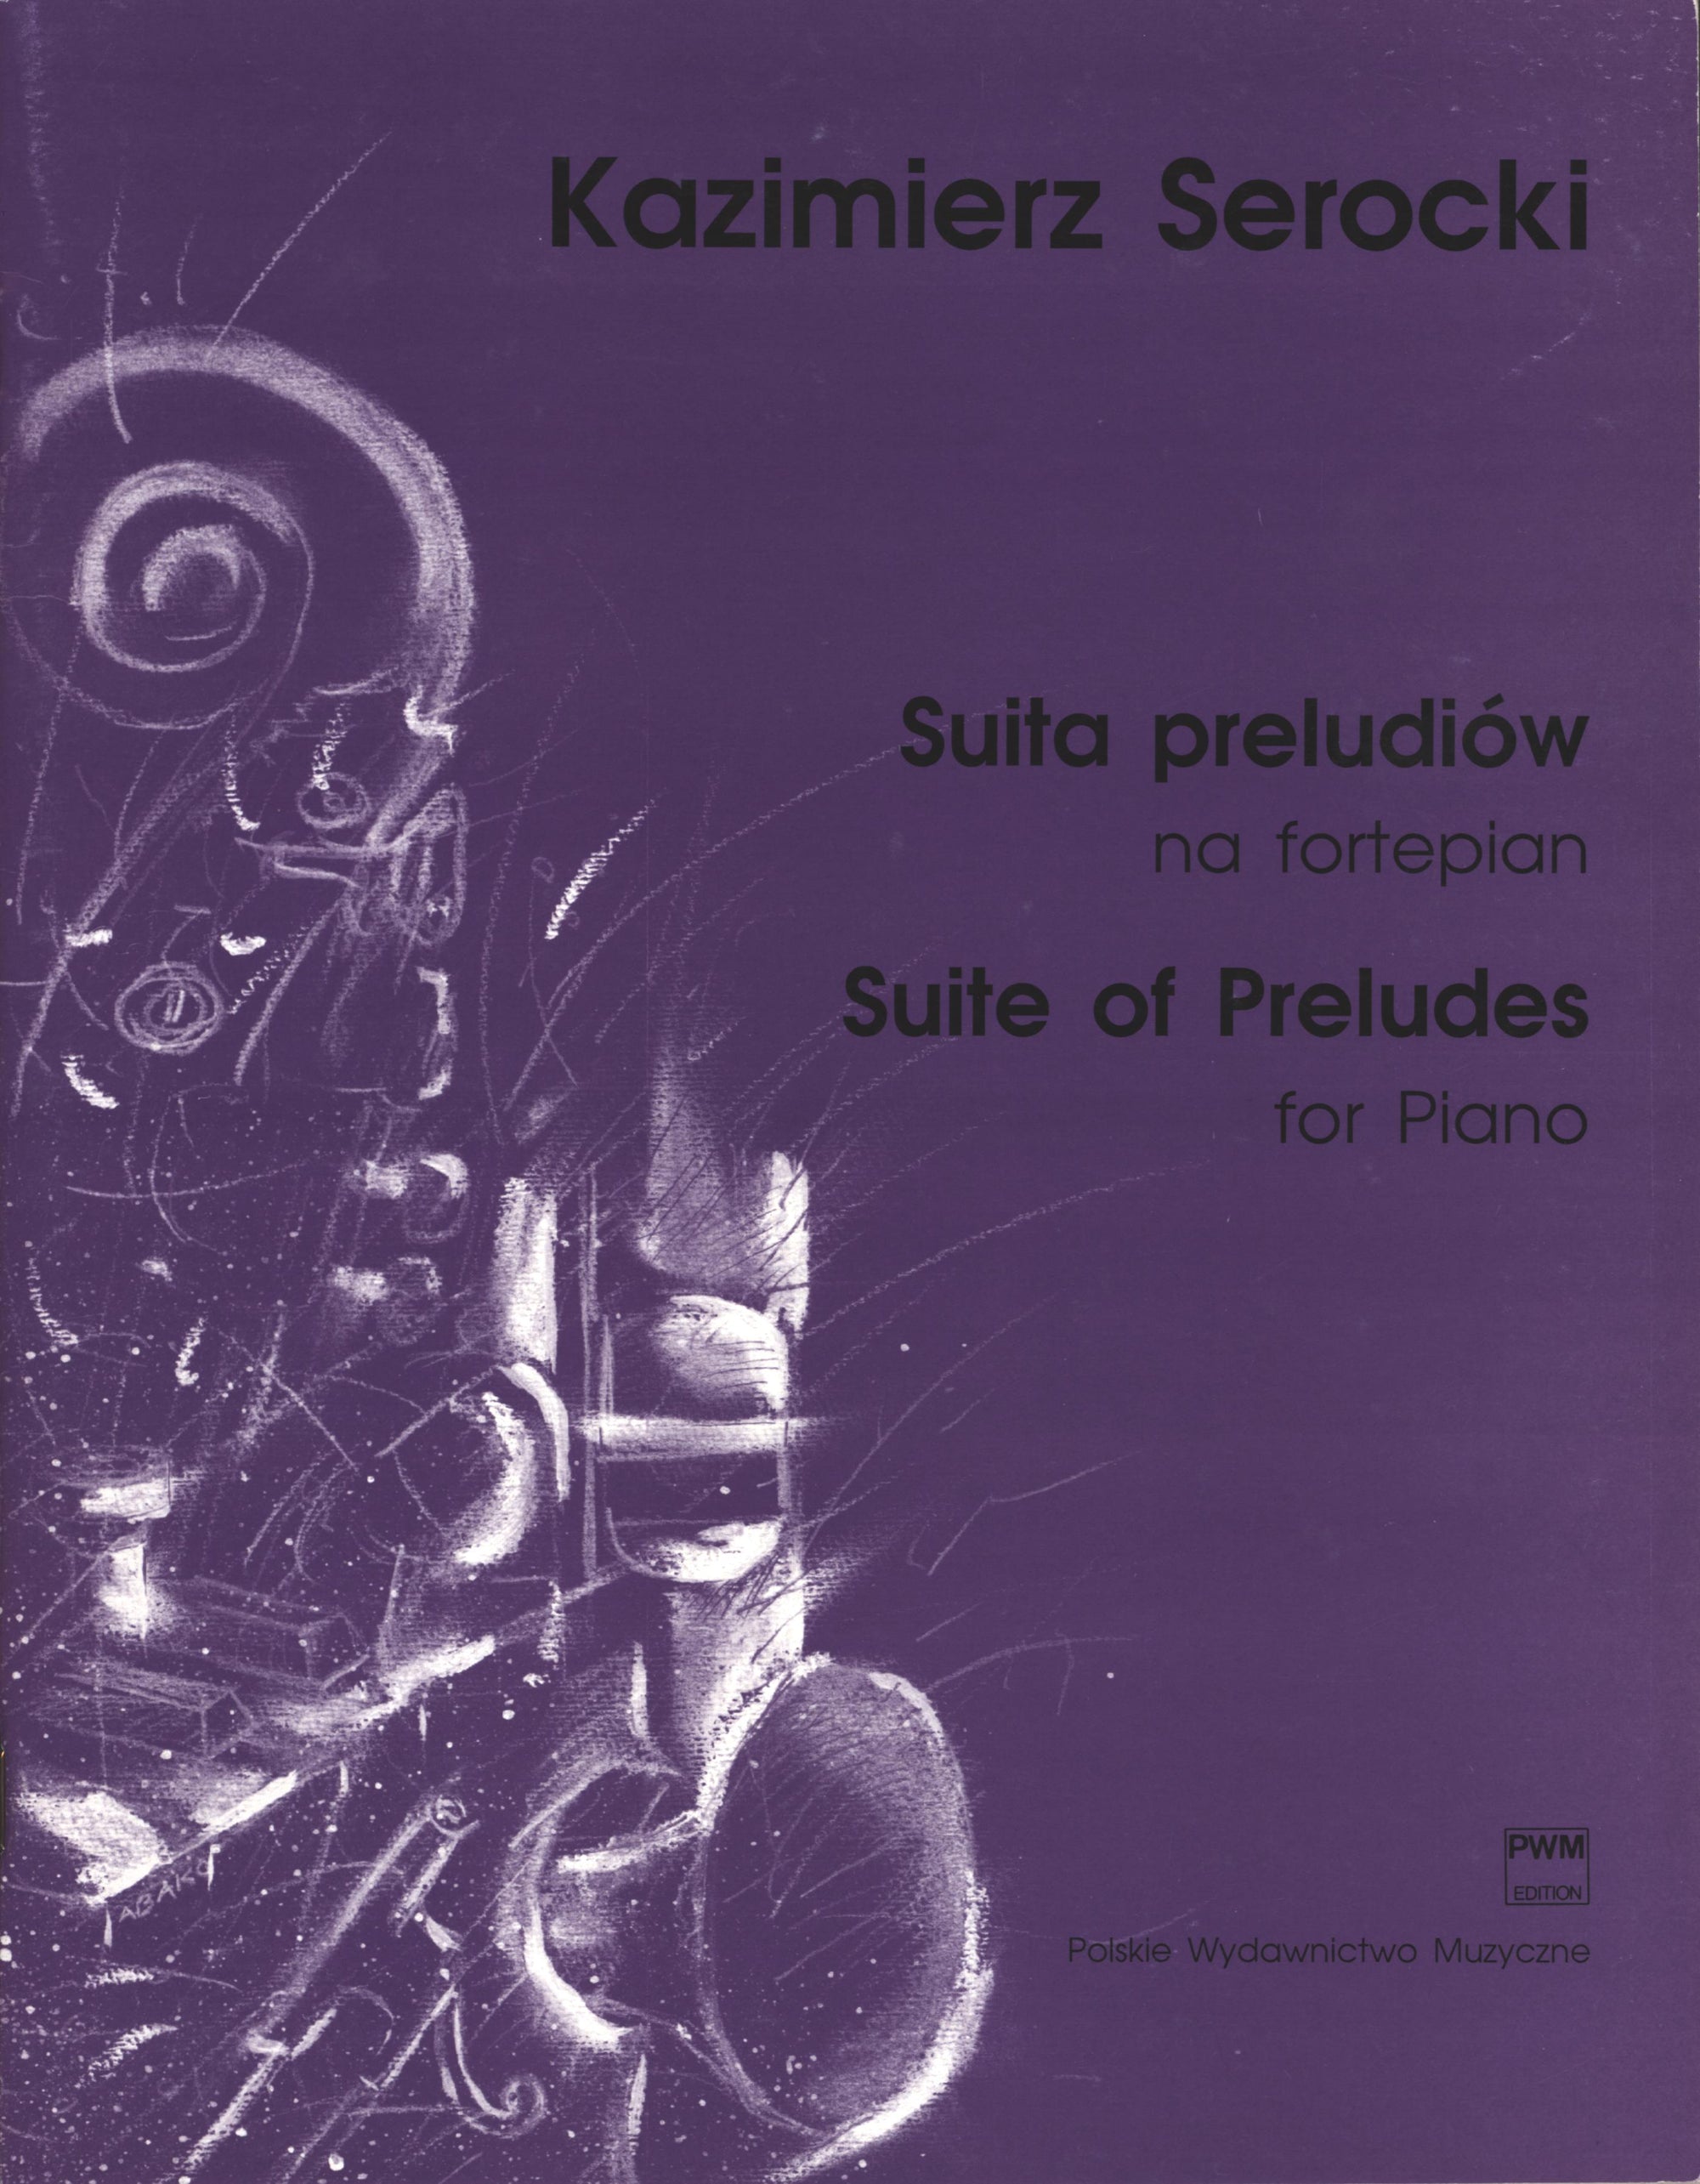 Serocki: Suite of Preludes